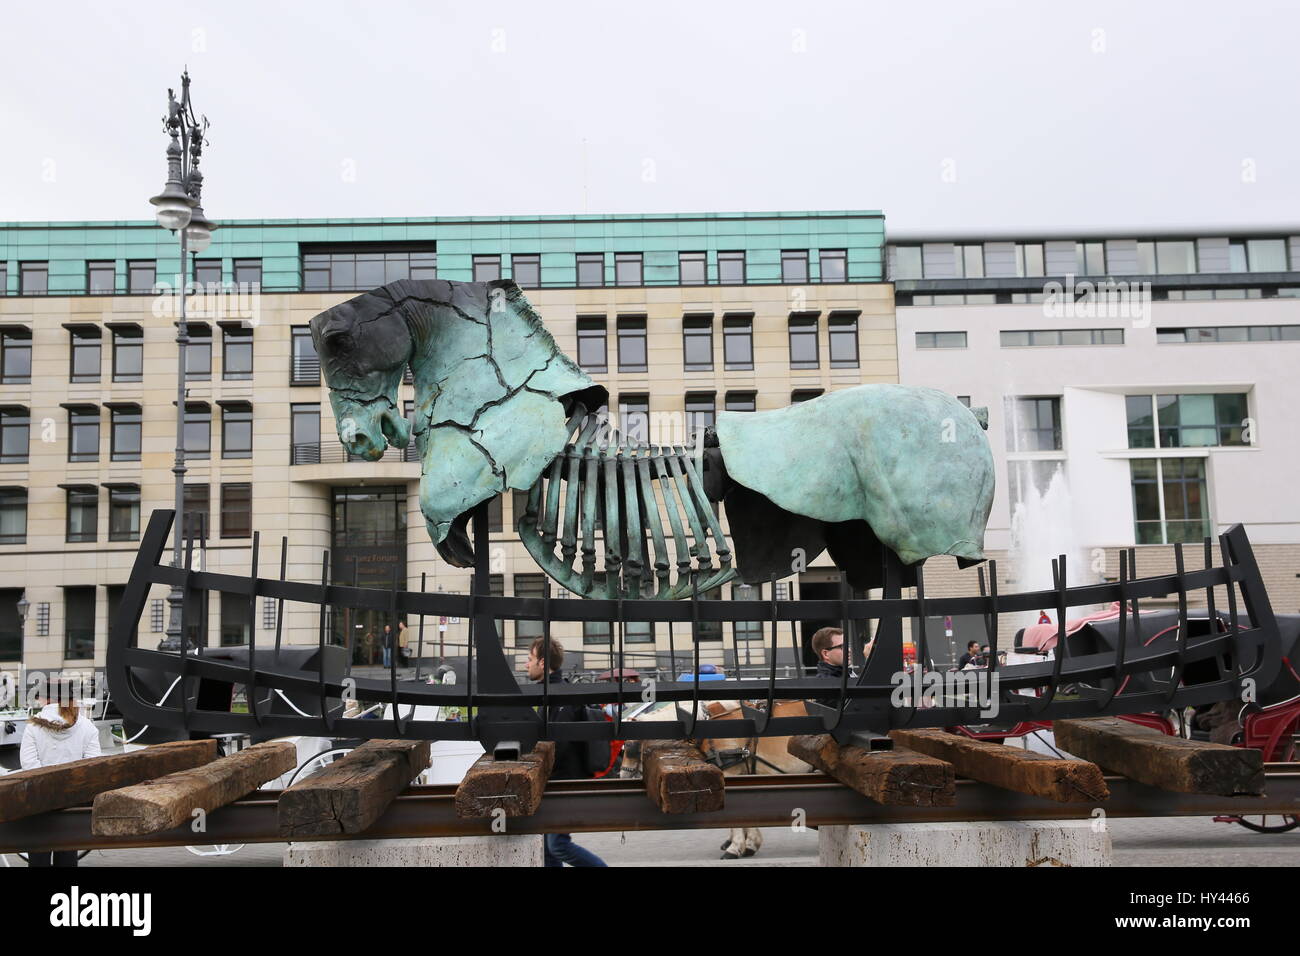 Berlin, Deutschland, 7. Mai 2015: Open-Air-Skulpturen-Ausstellung "Lapidarium" von Gustavo Aceves. Stockfoto